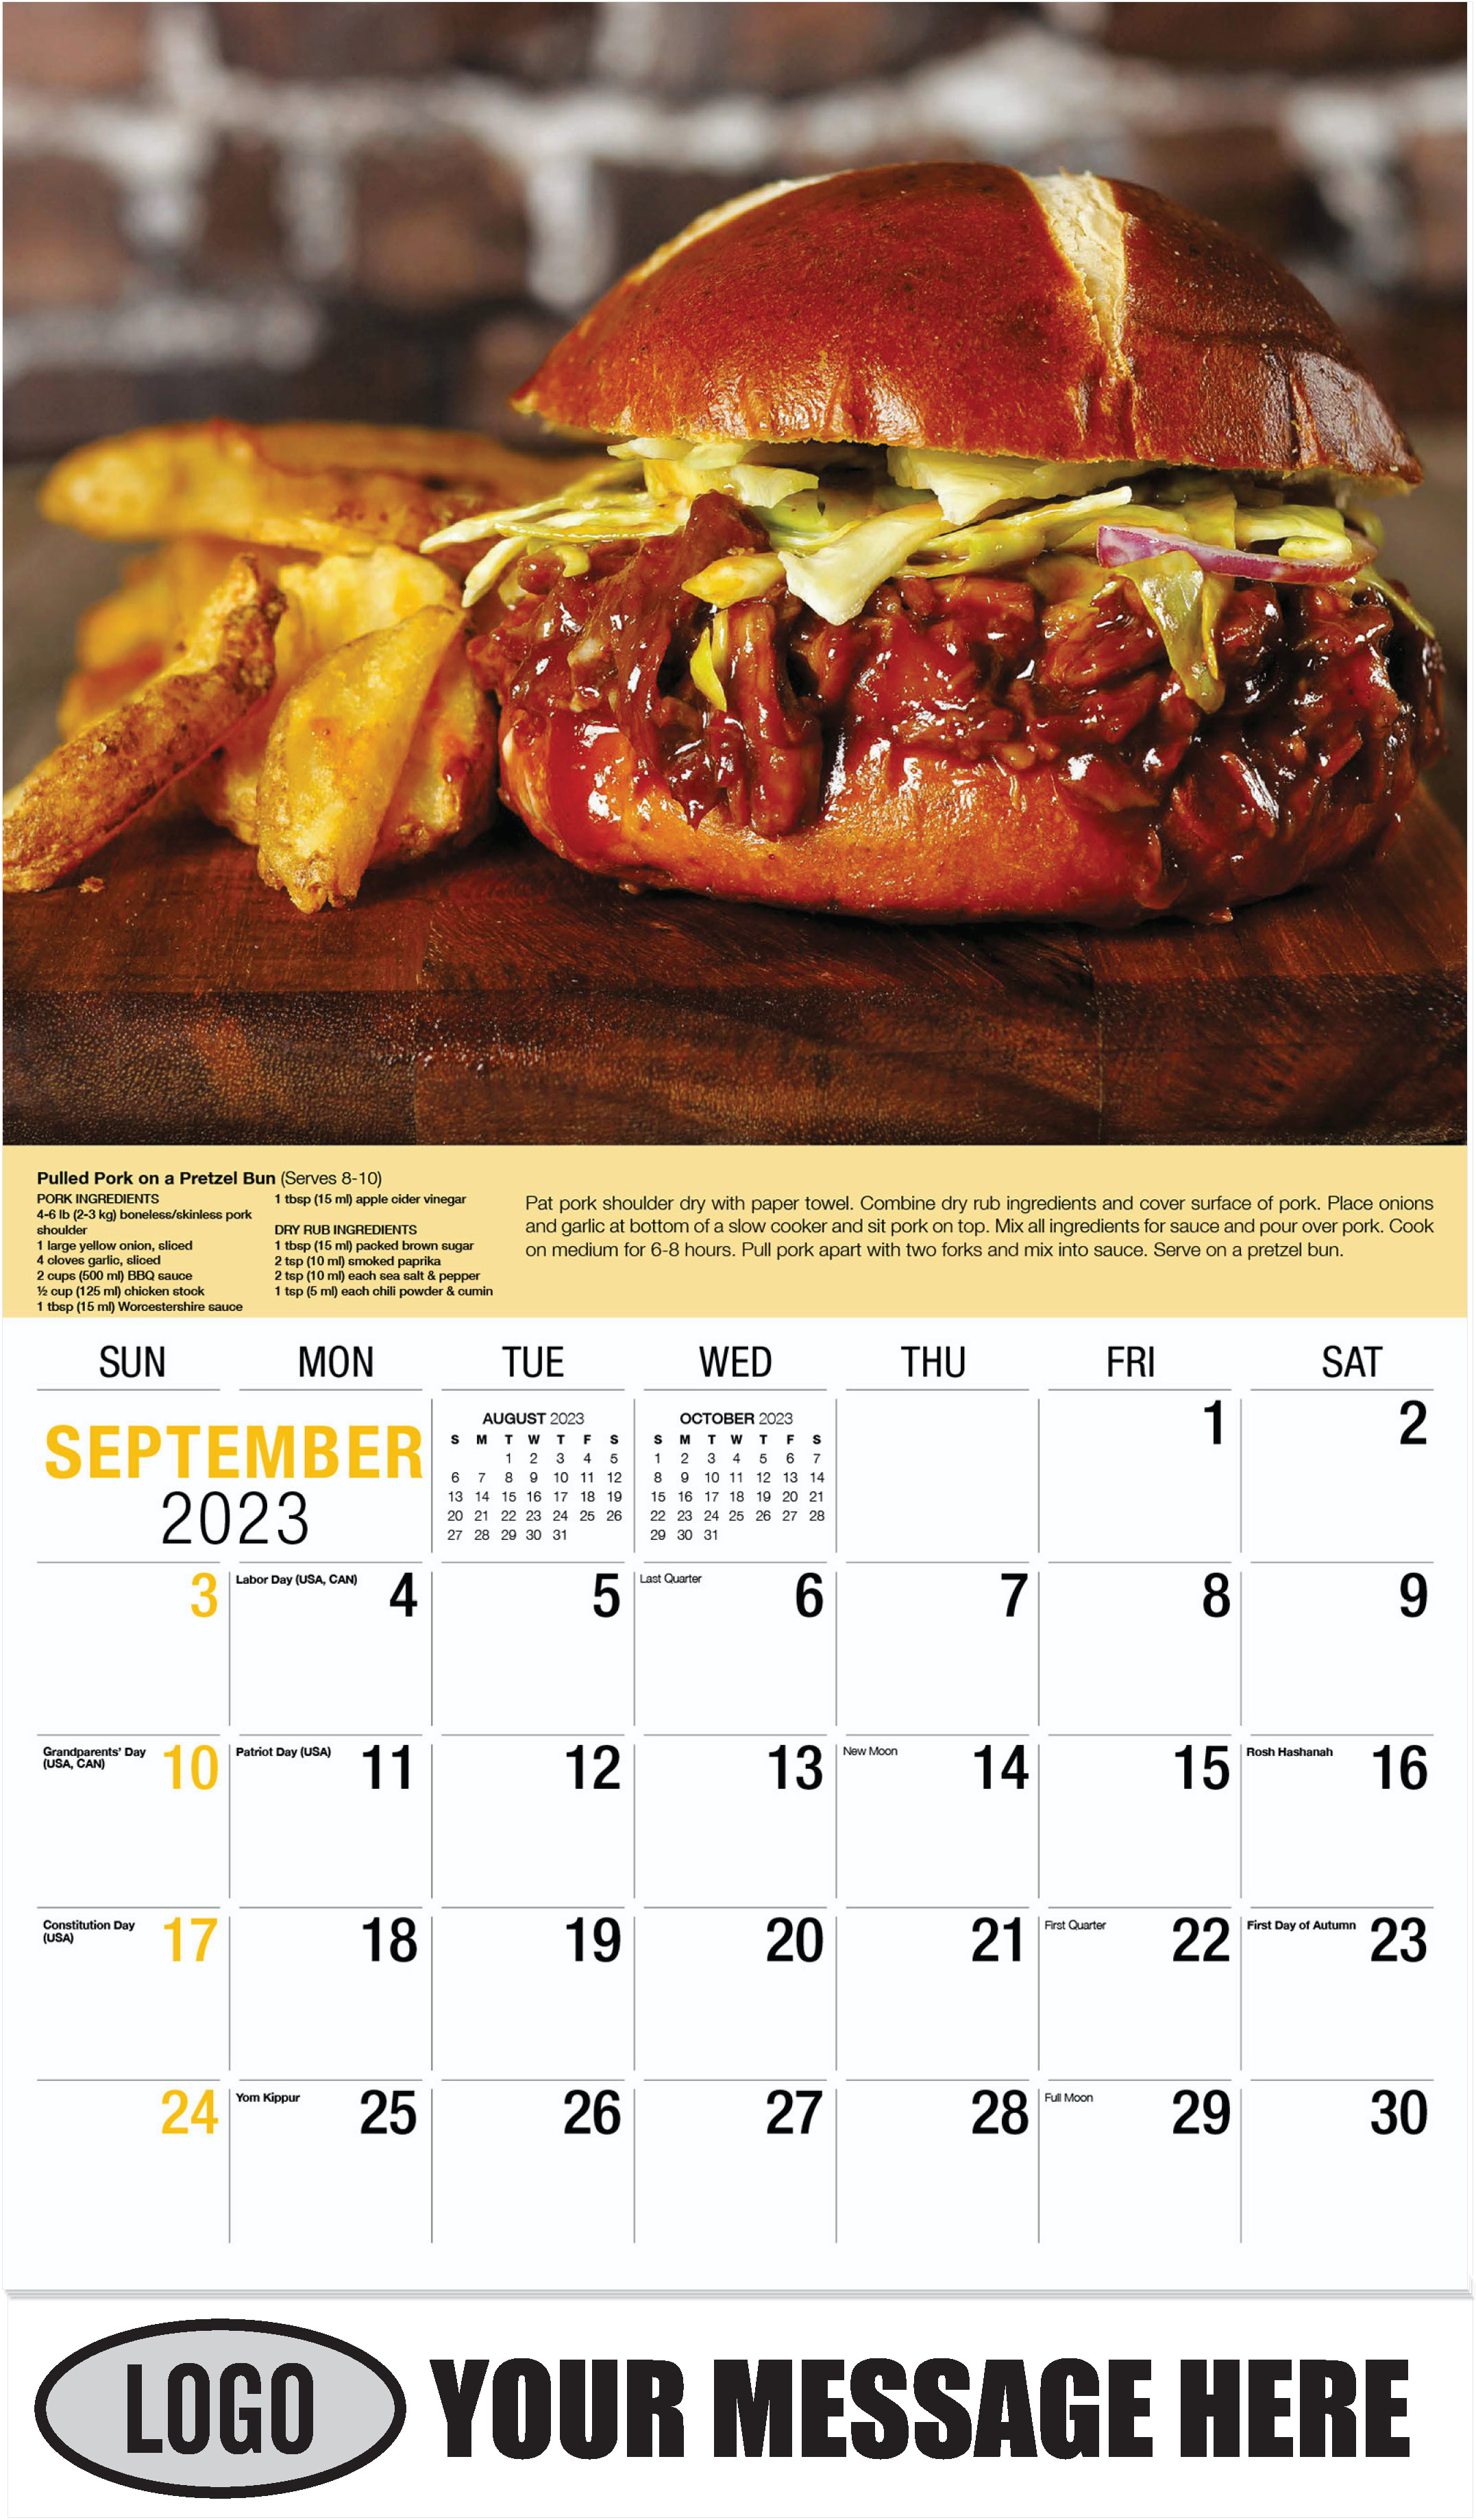 September - Recipes 2023 Promotional Calendar